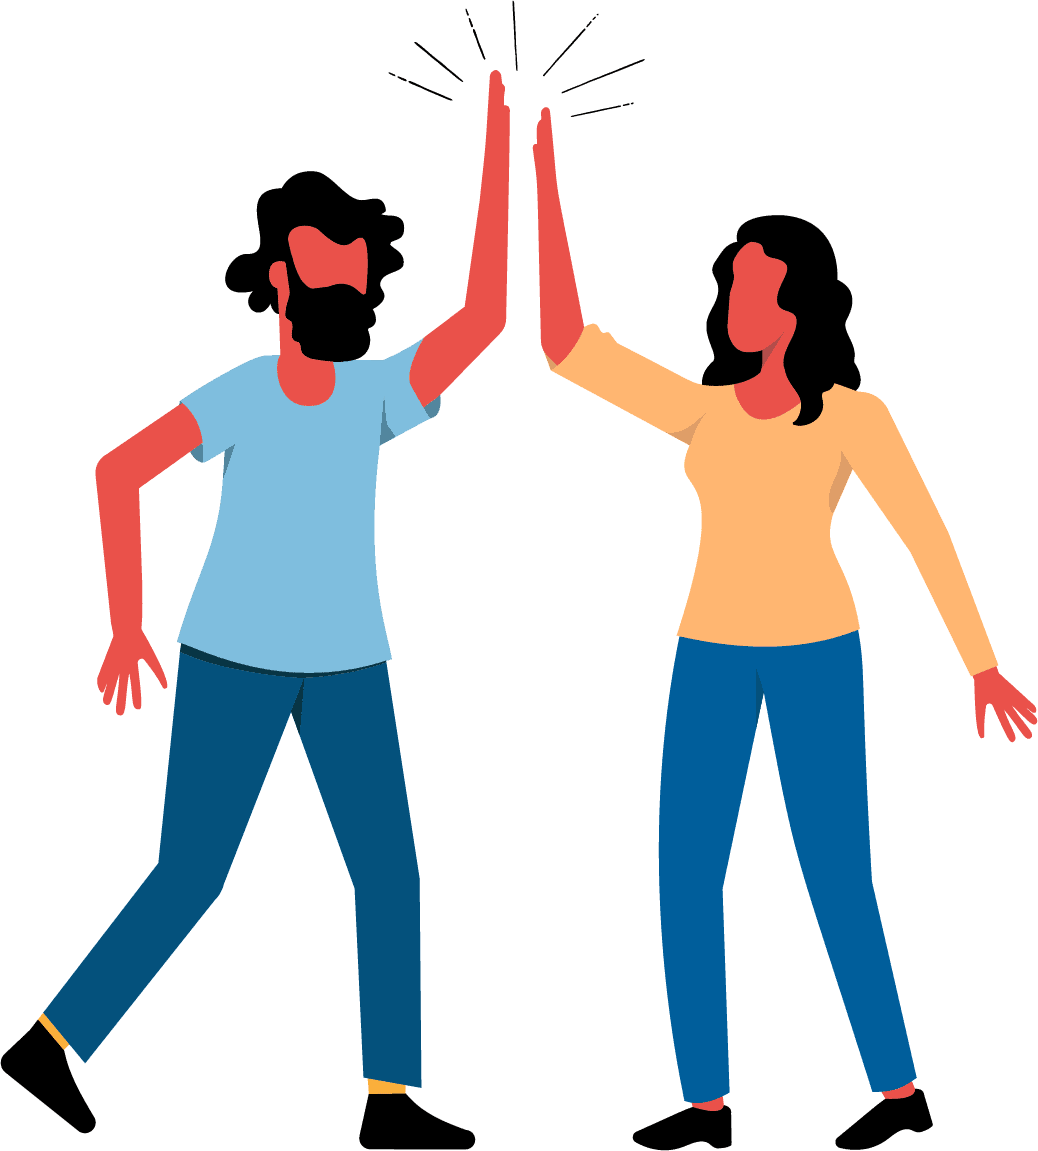 人間の大人2人が、祝辞や挨拶の際に、両手を挙げて開いた手のひらを叩き合う一般的なジェスチャーを使う。